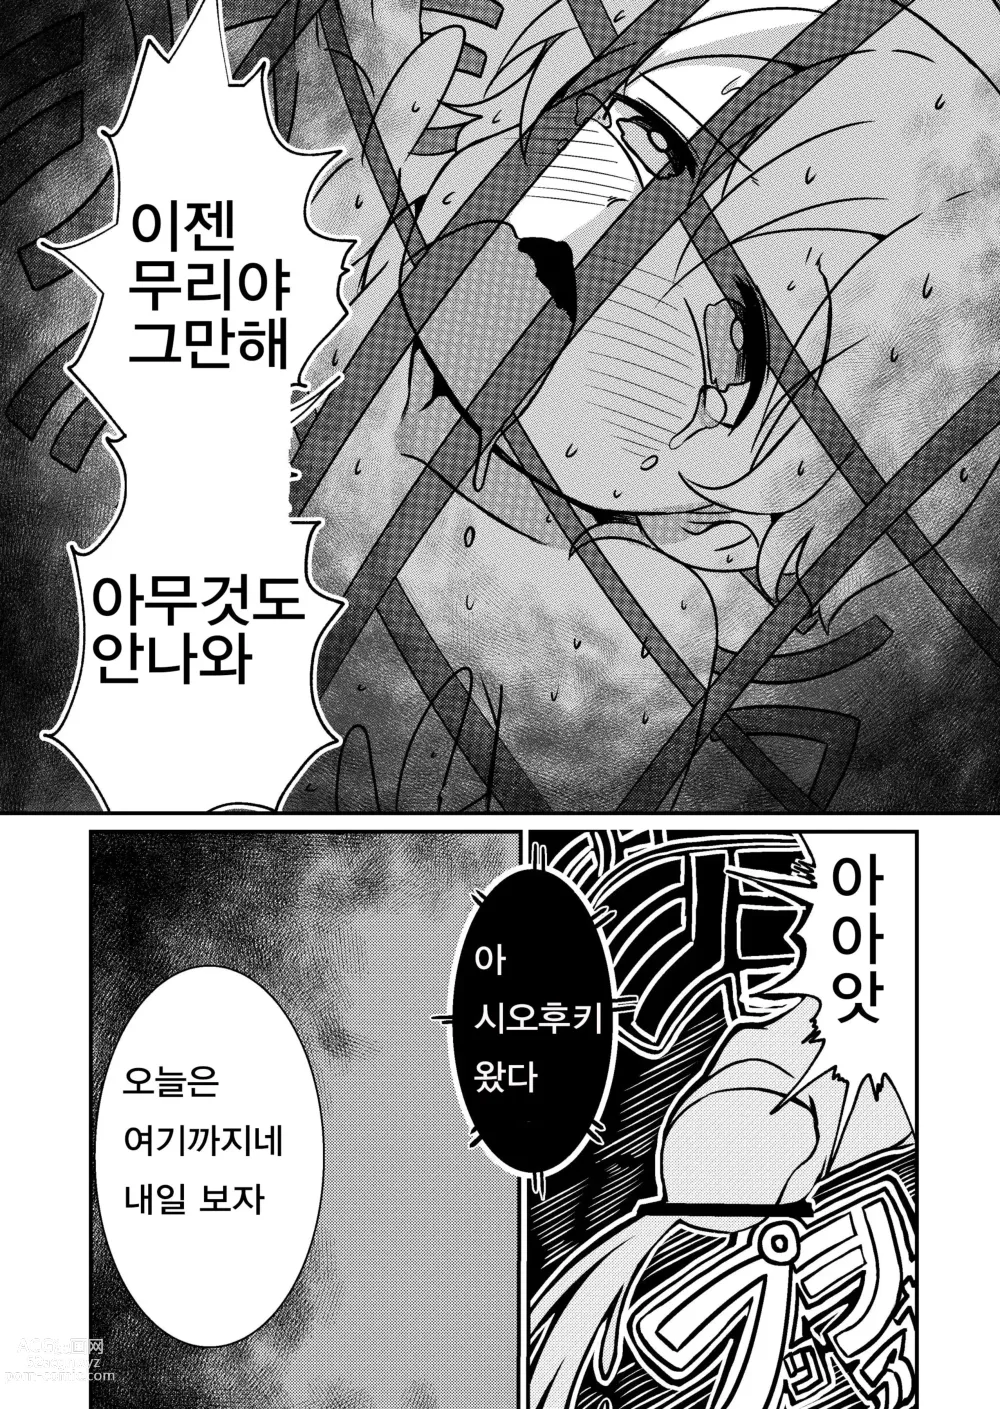 Page 13 of doujinshi Fuuin Hodoitara Damasare Tsukarete Shibo Shirage Jinsei Konna Kotonara Tokanakya Yokatta